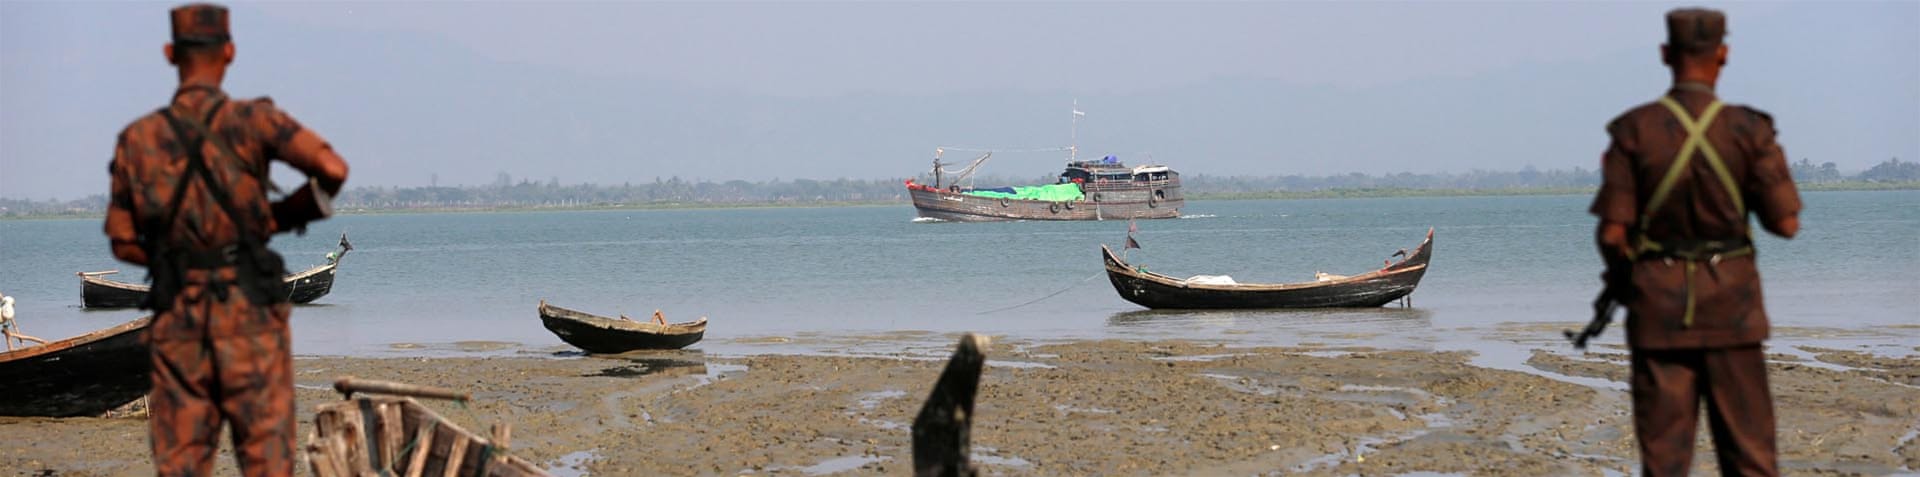 Rohingya Muslims have fled en masse as Myanmar cracks down on northern region [Mohammad Ponir Hossain/Reuters]